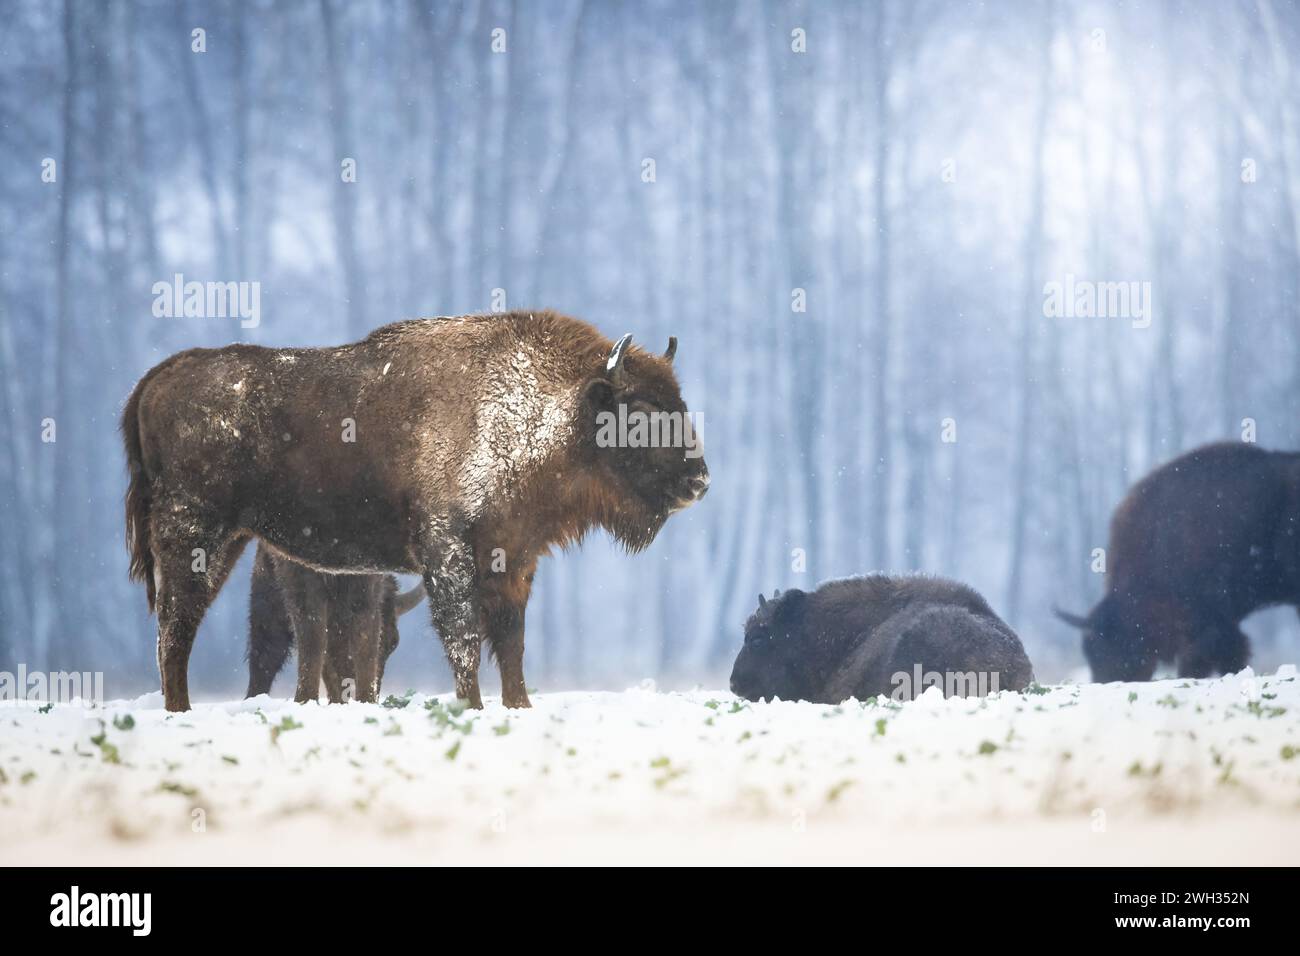 Säugetiere wilde Natur Europäische Bisons Bison bonasus Wisent Herde auf dem winterlichen schneebedeckten Feld im Nordosten Polens, Europa Knyszynska Forest Stockfoto